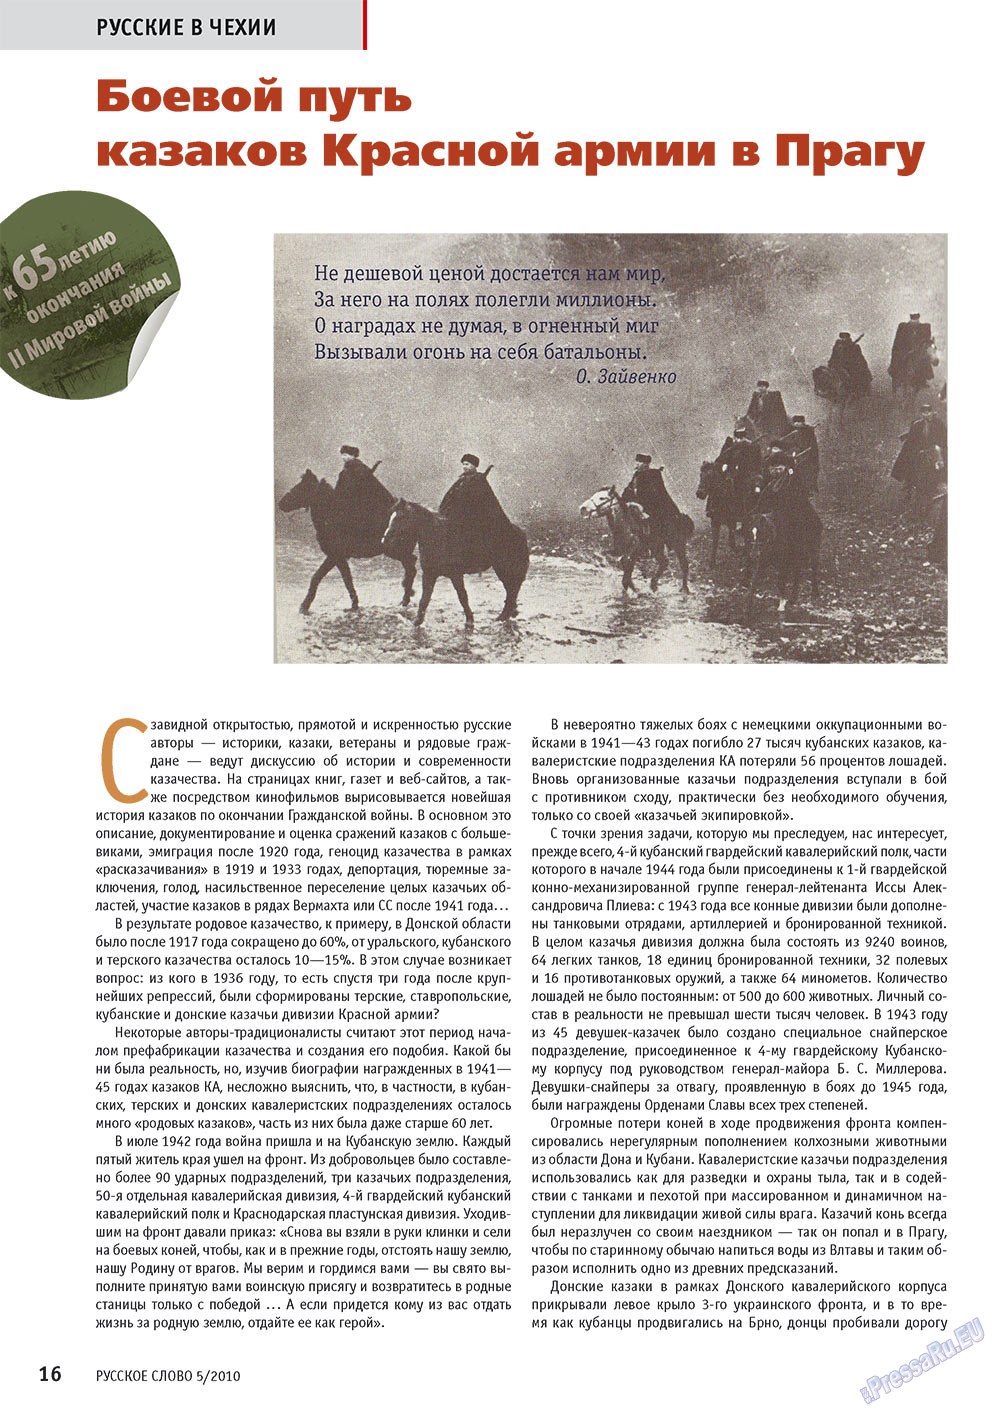 Русское слово, журнал. 2010 №5 стр.18